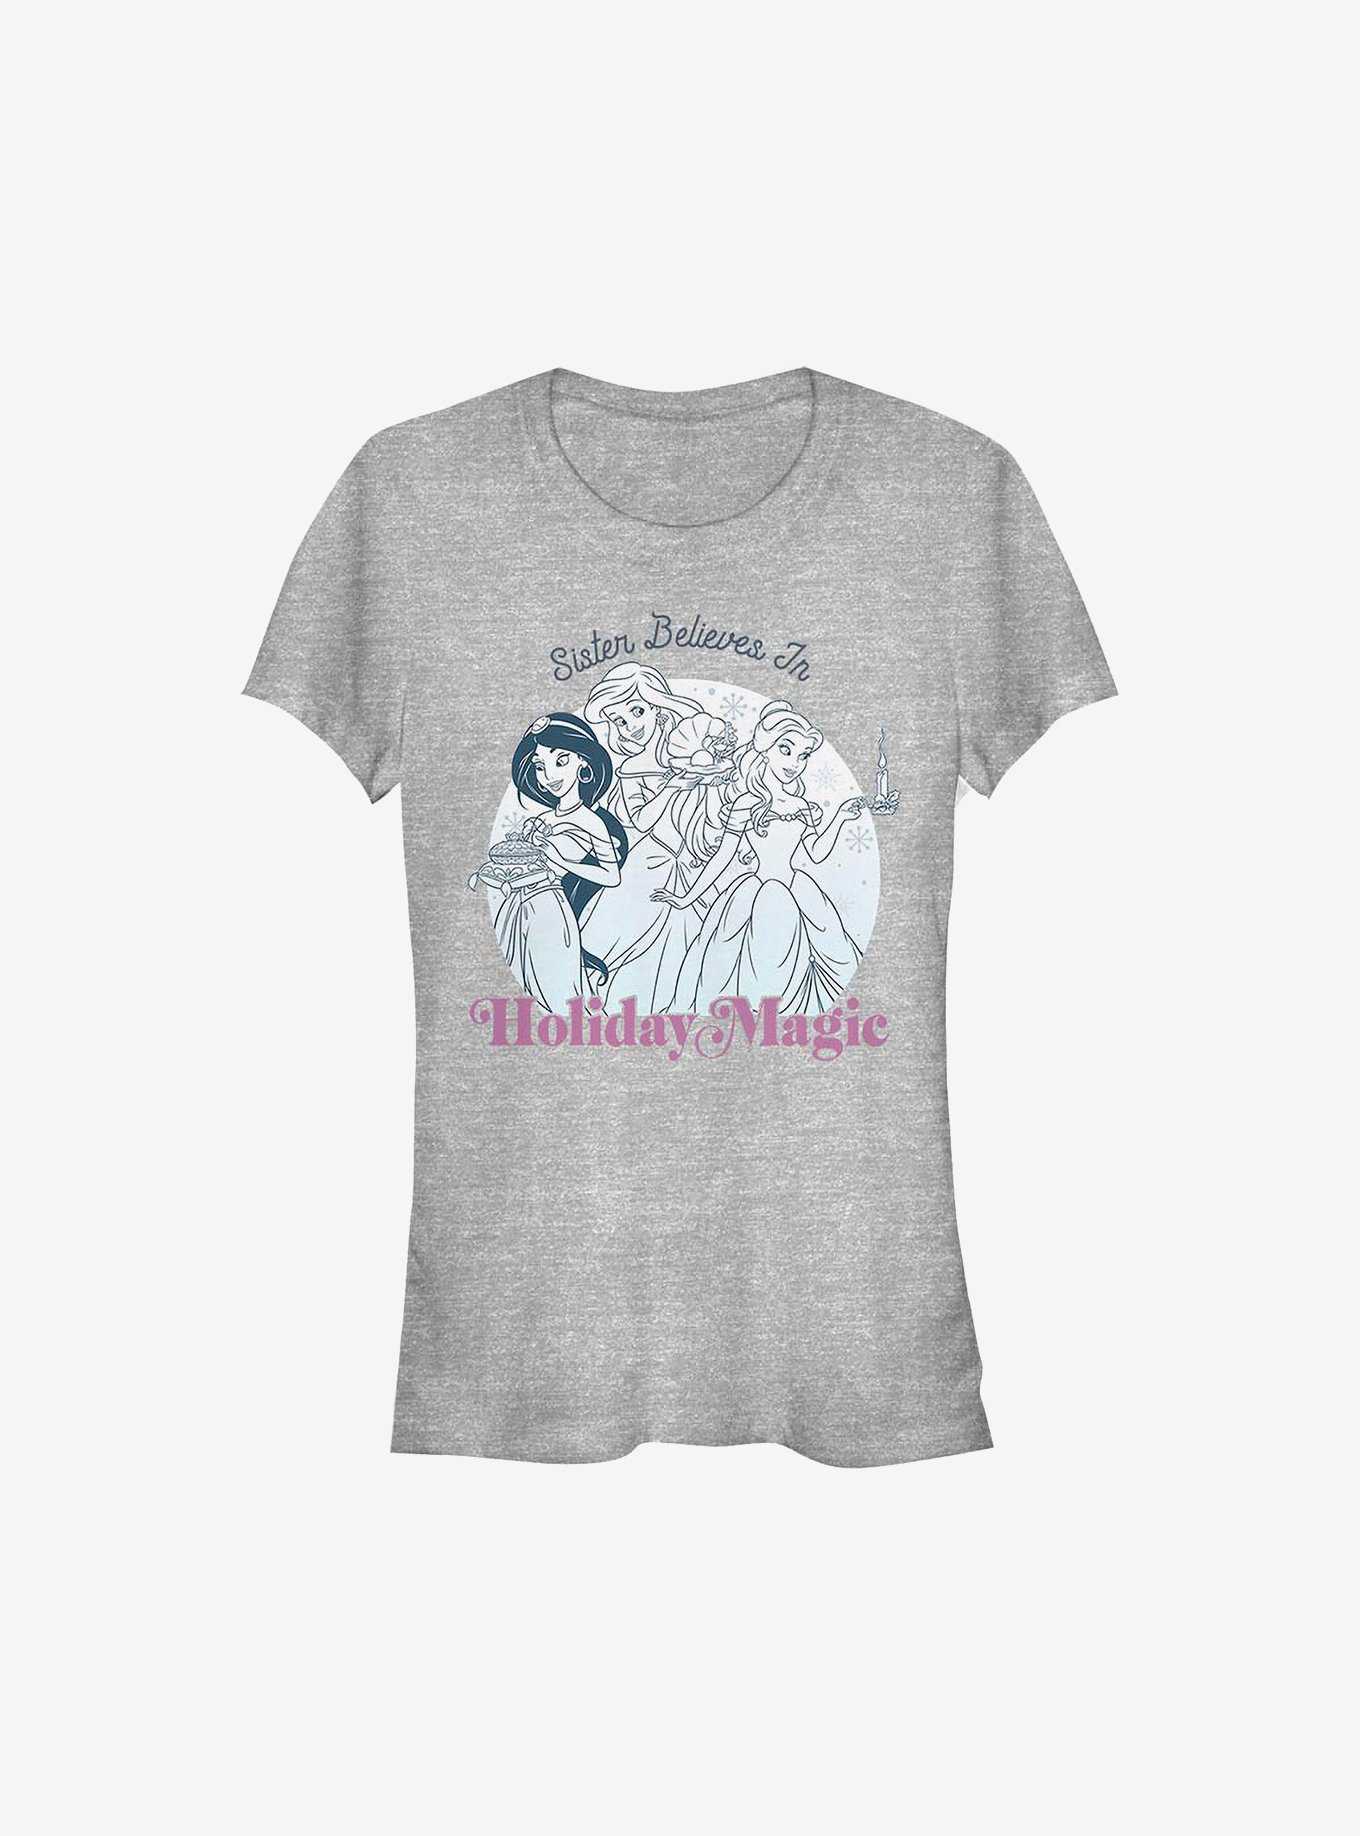 Disney Princesses Holiday Magic Sister Girls T-Shirt, , hi-res